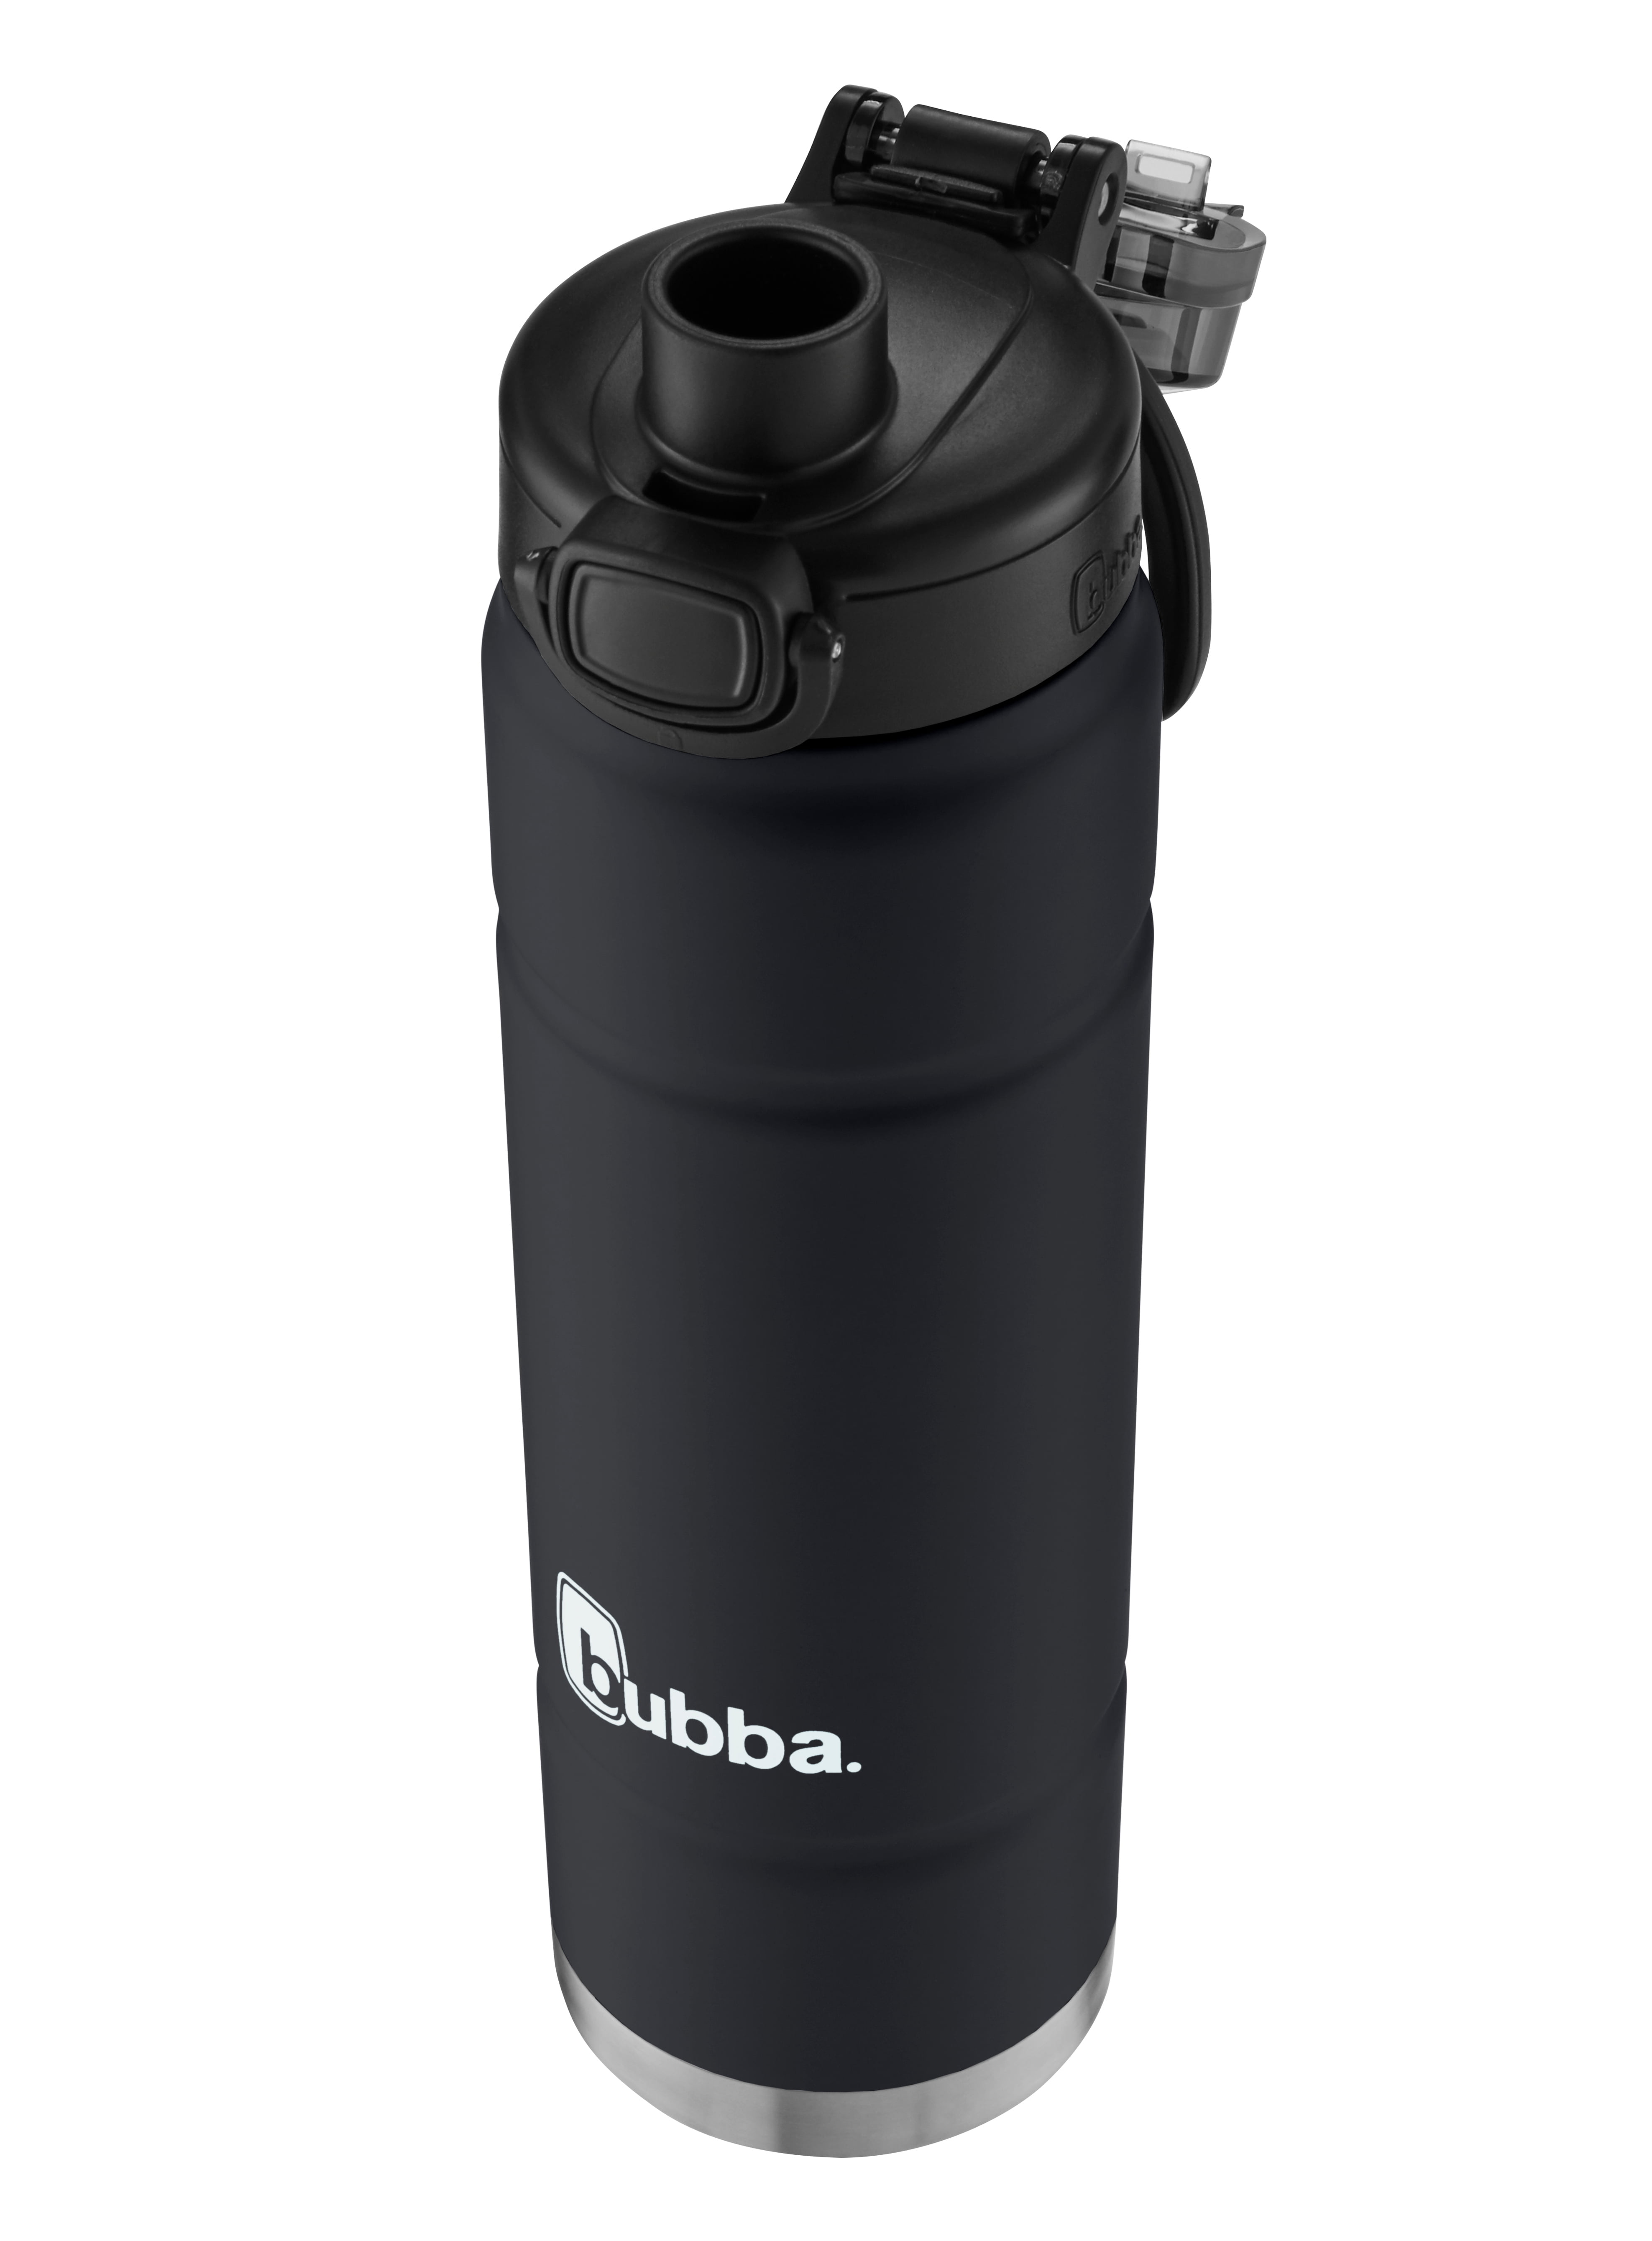 Bubba Trailblazer Stainless Steel Water Bottle Push Button Lid Rubberized in Teal, 24 fl oz.